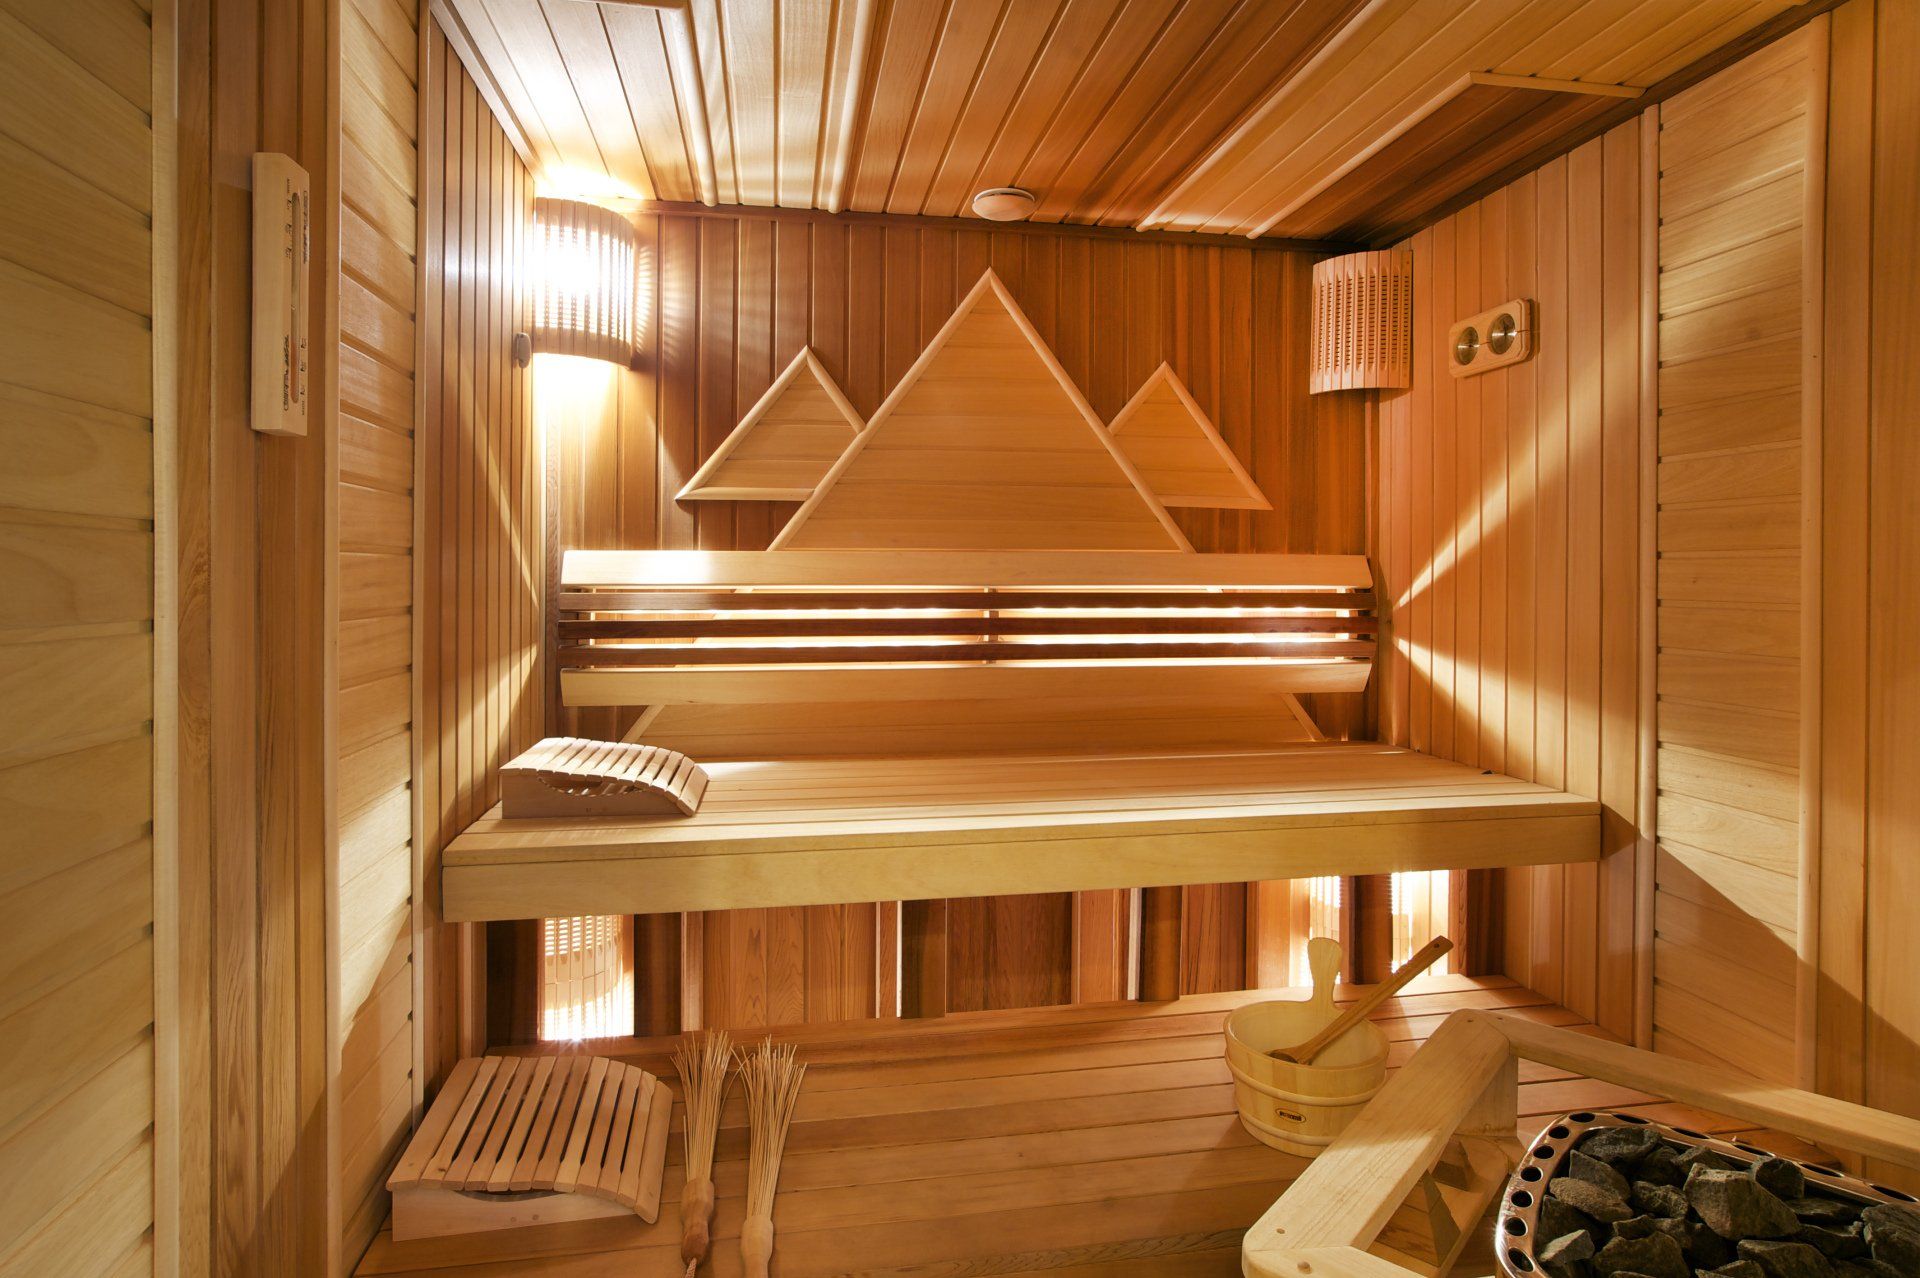 Entreprise spécialisée dans l'installation de saunas